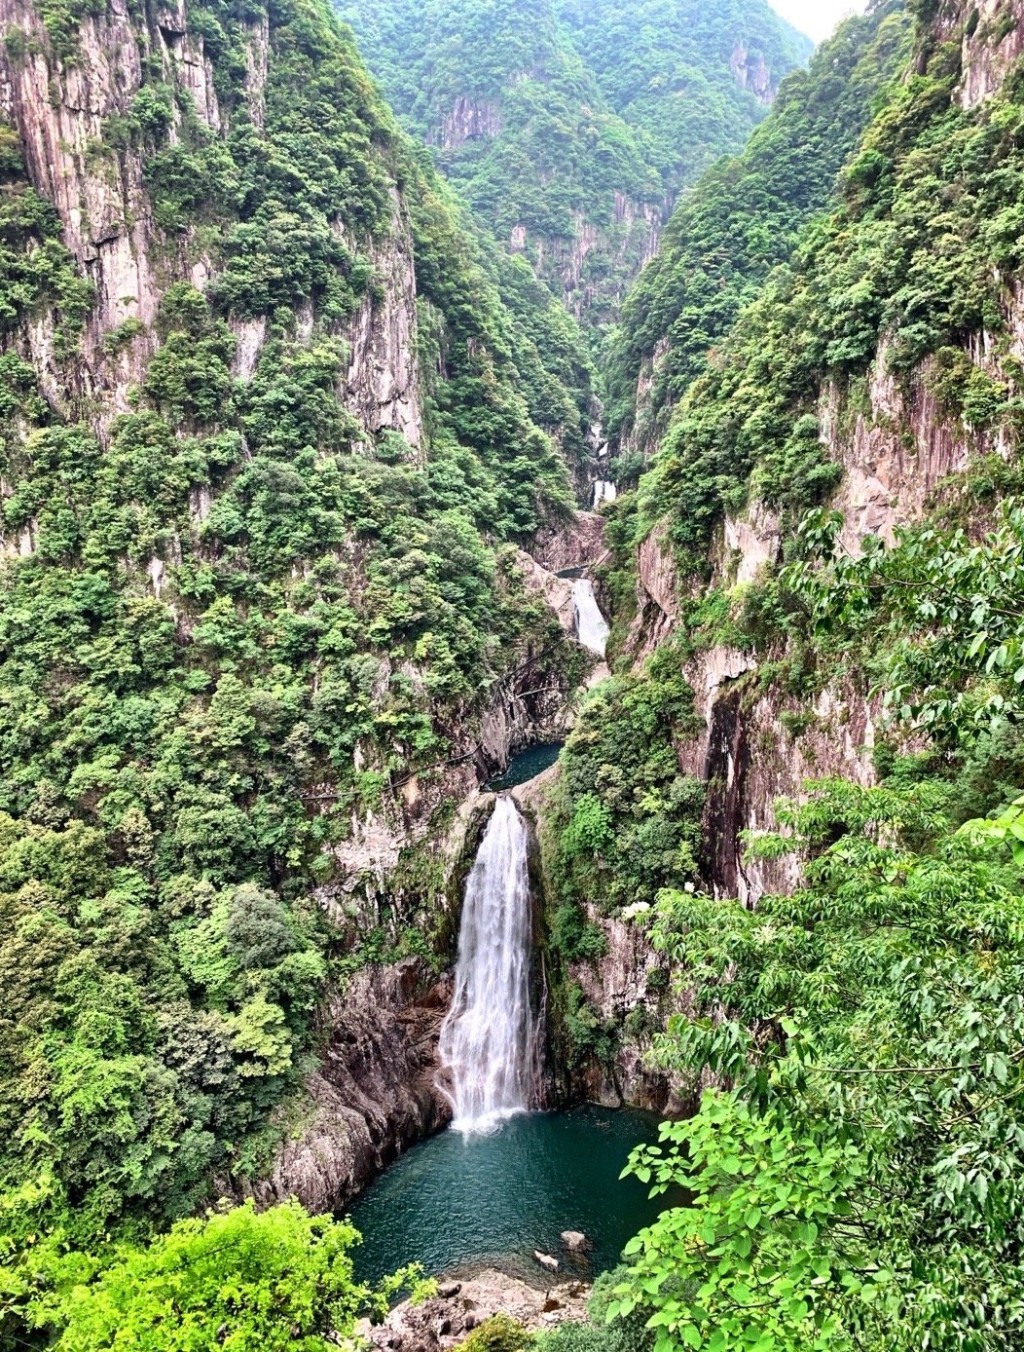 温州雁荡山景区，是浙江唯一的世界地质公园，地势险要雄伟。微博